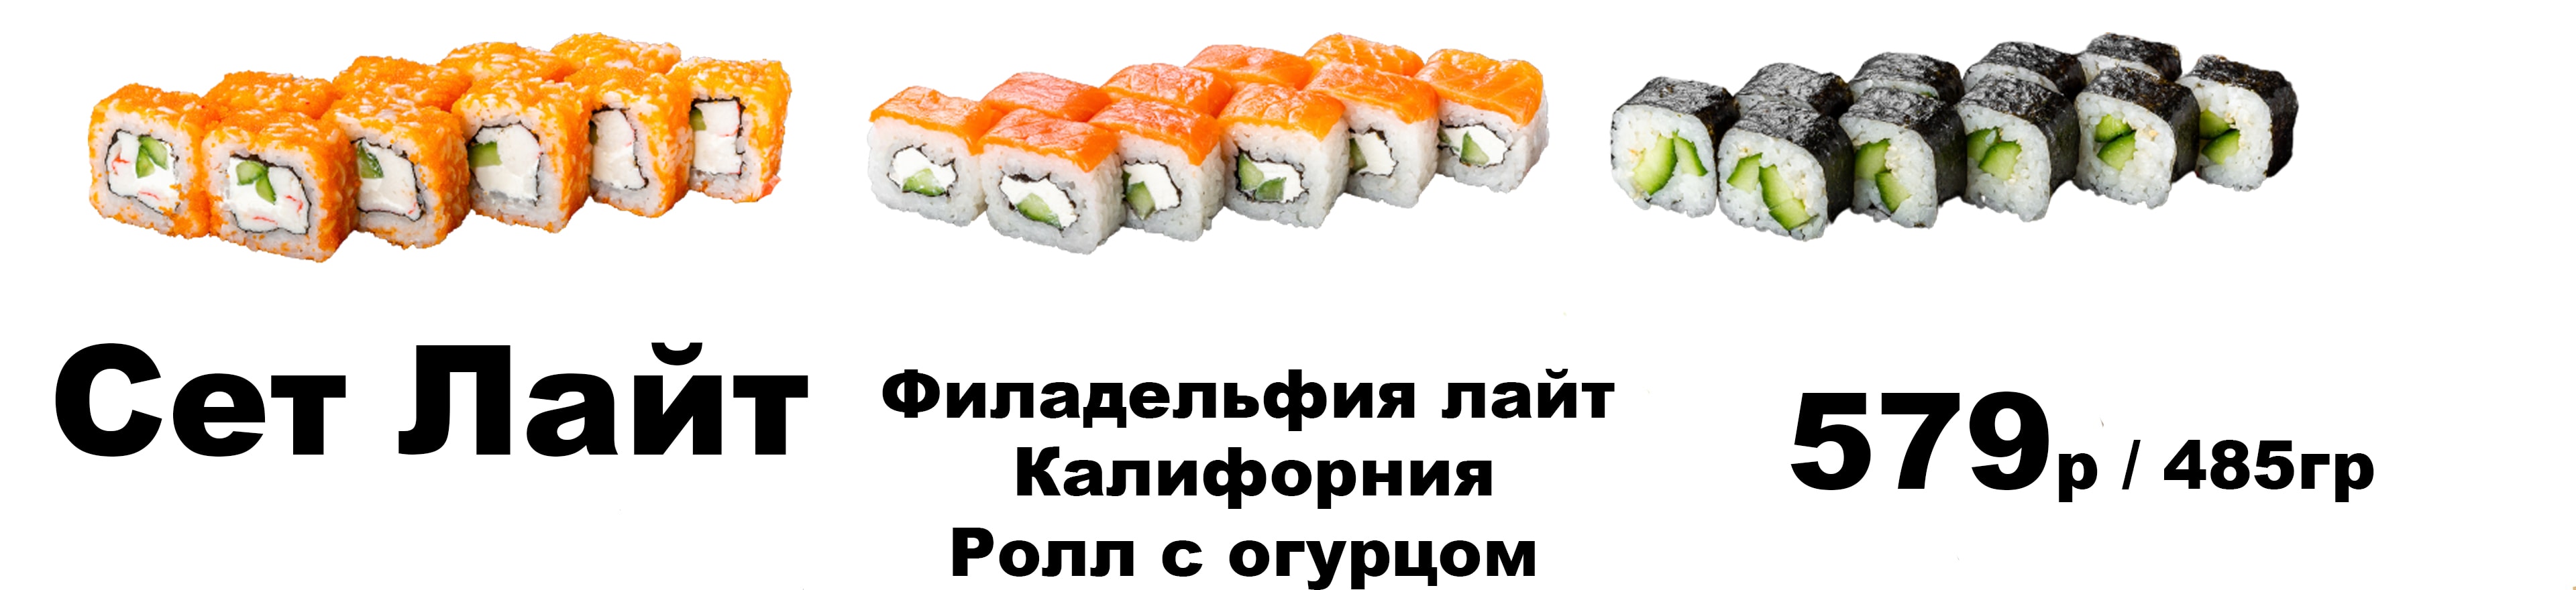 Заказать суши на дом петропавловск фото 51